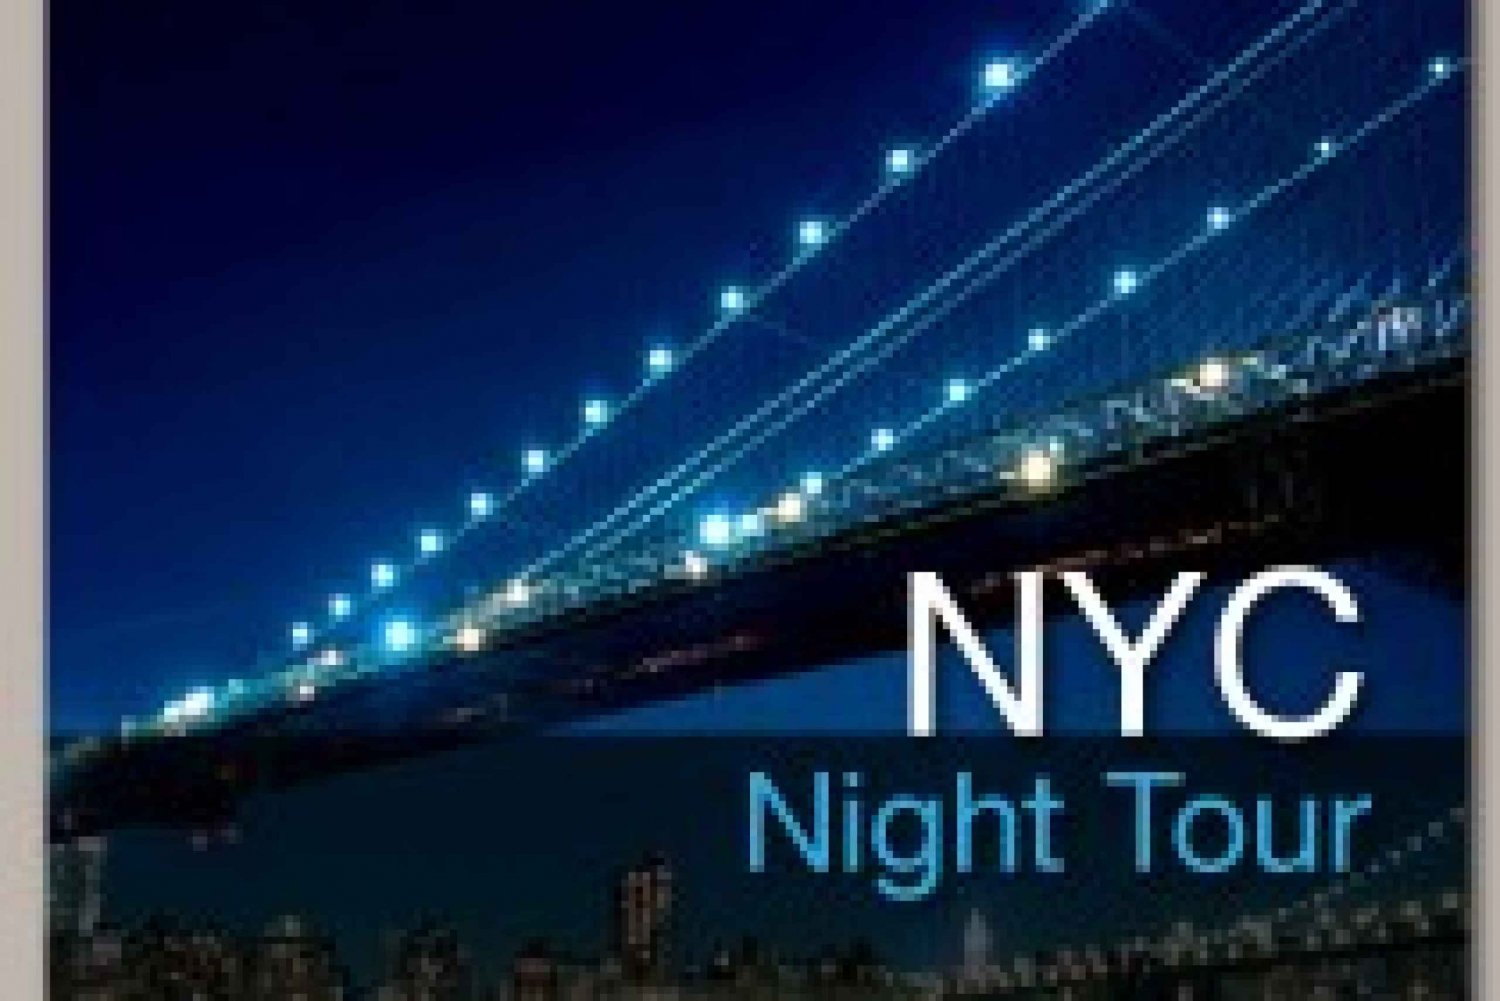 Tour pela cidade de Nova York à noite